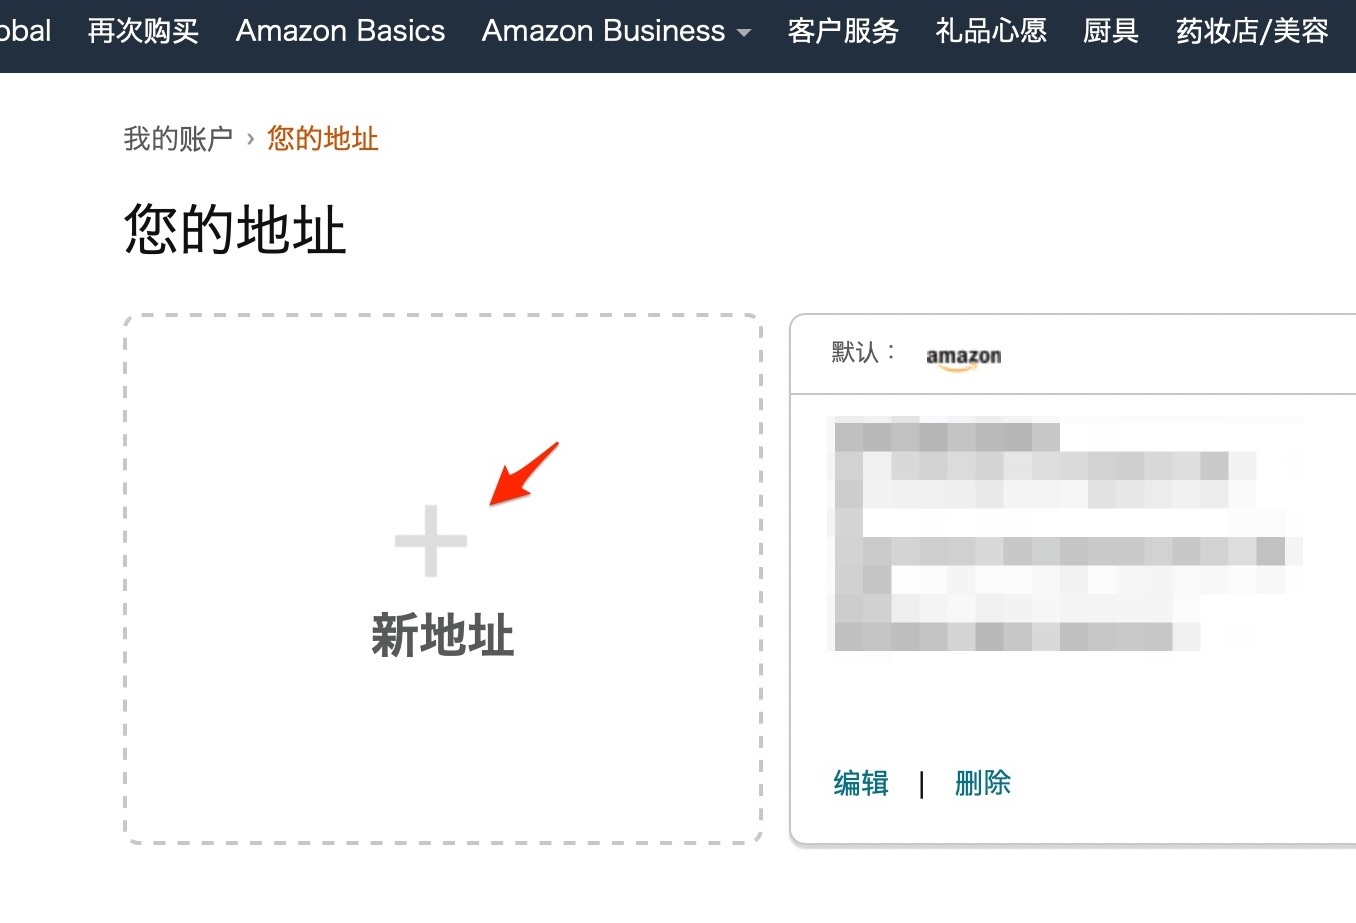 日本亞馬遜 Amazon JP 網購 2021 最新教學！中文介面免找代購直寄台灣